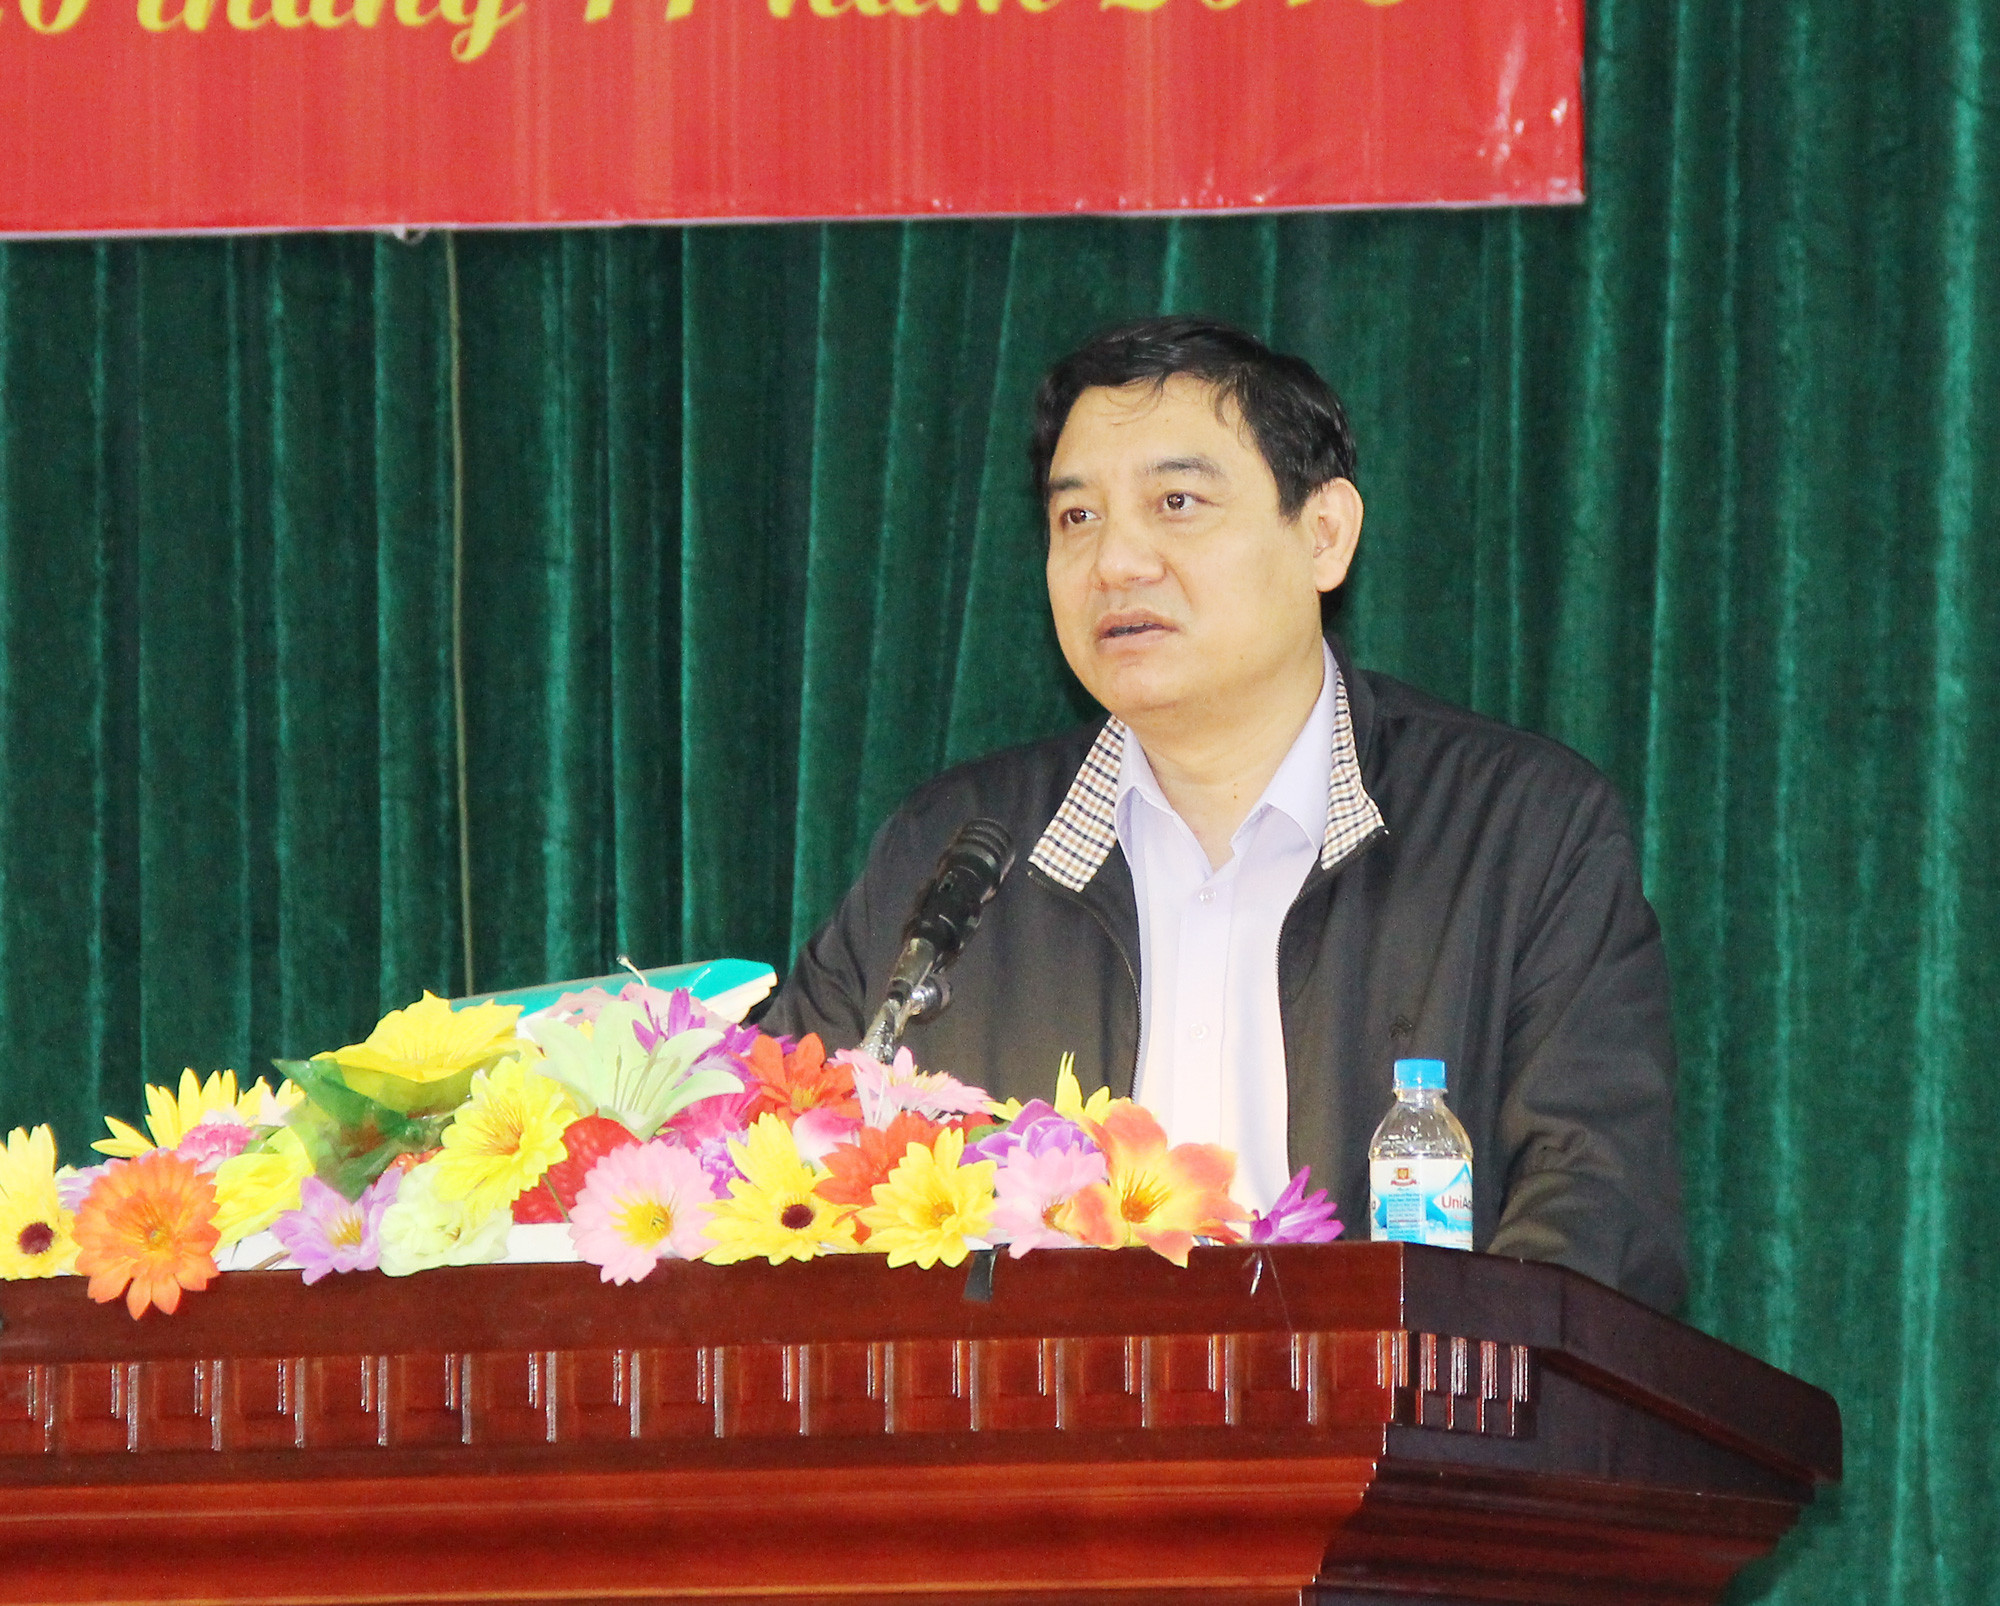 Đồng chí Nguyễn Đắc Vinh - Ủy viên BCH Trung ương Đảng, Bí thư Tỉnh ủy, Trưởng đoàn ĐBQH tỉnh chủ trì hội nghị.